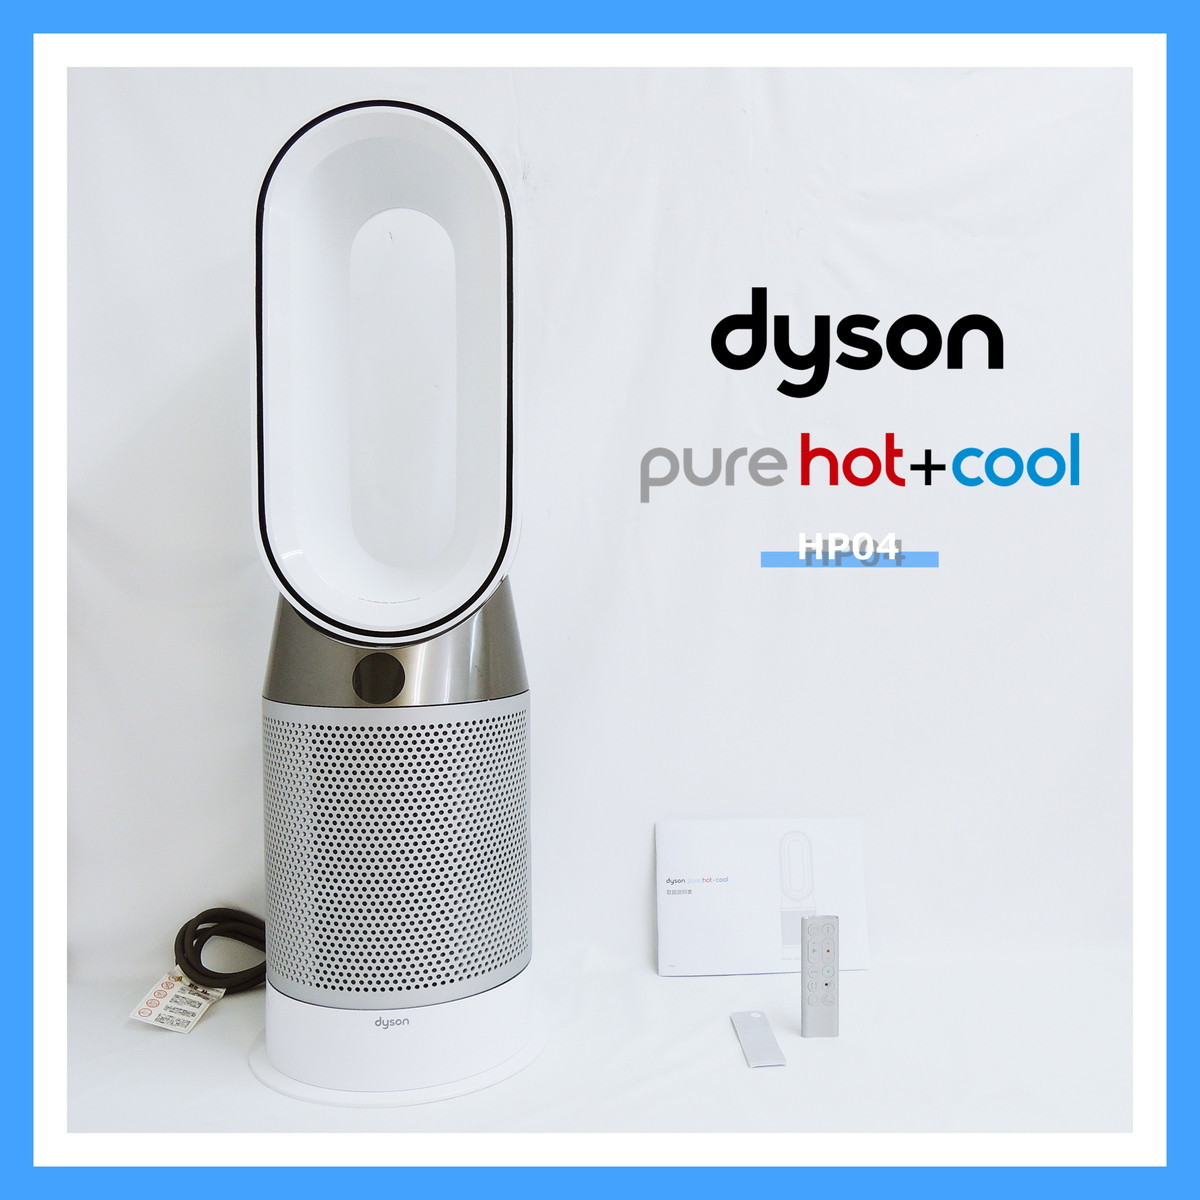 ダイソン HP04 WS Pure Hot + Cool 空気清浄機能付き ファンヒーター 扇風機 dyson ピュア ホット クール ホワイト/シルバー (2)_画像1